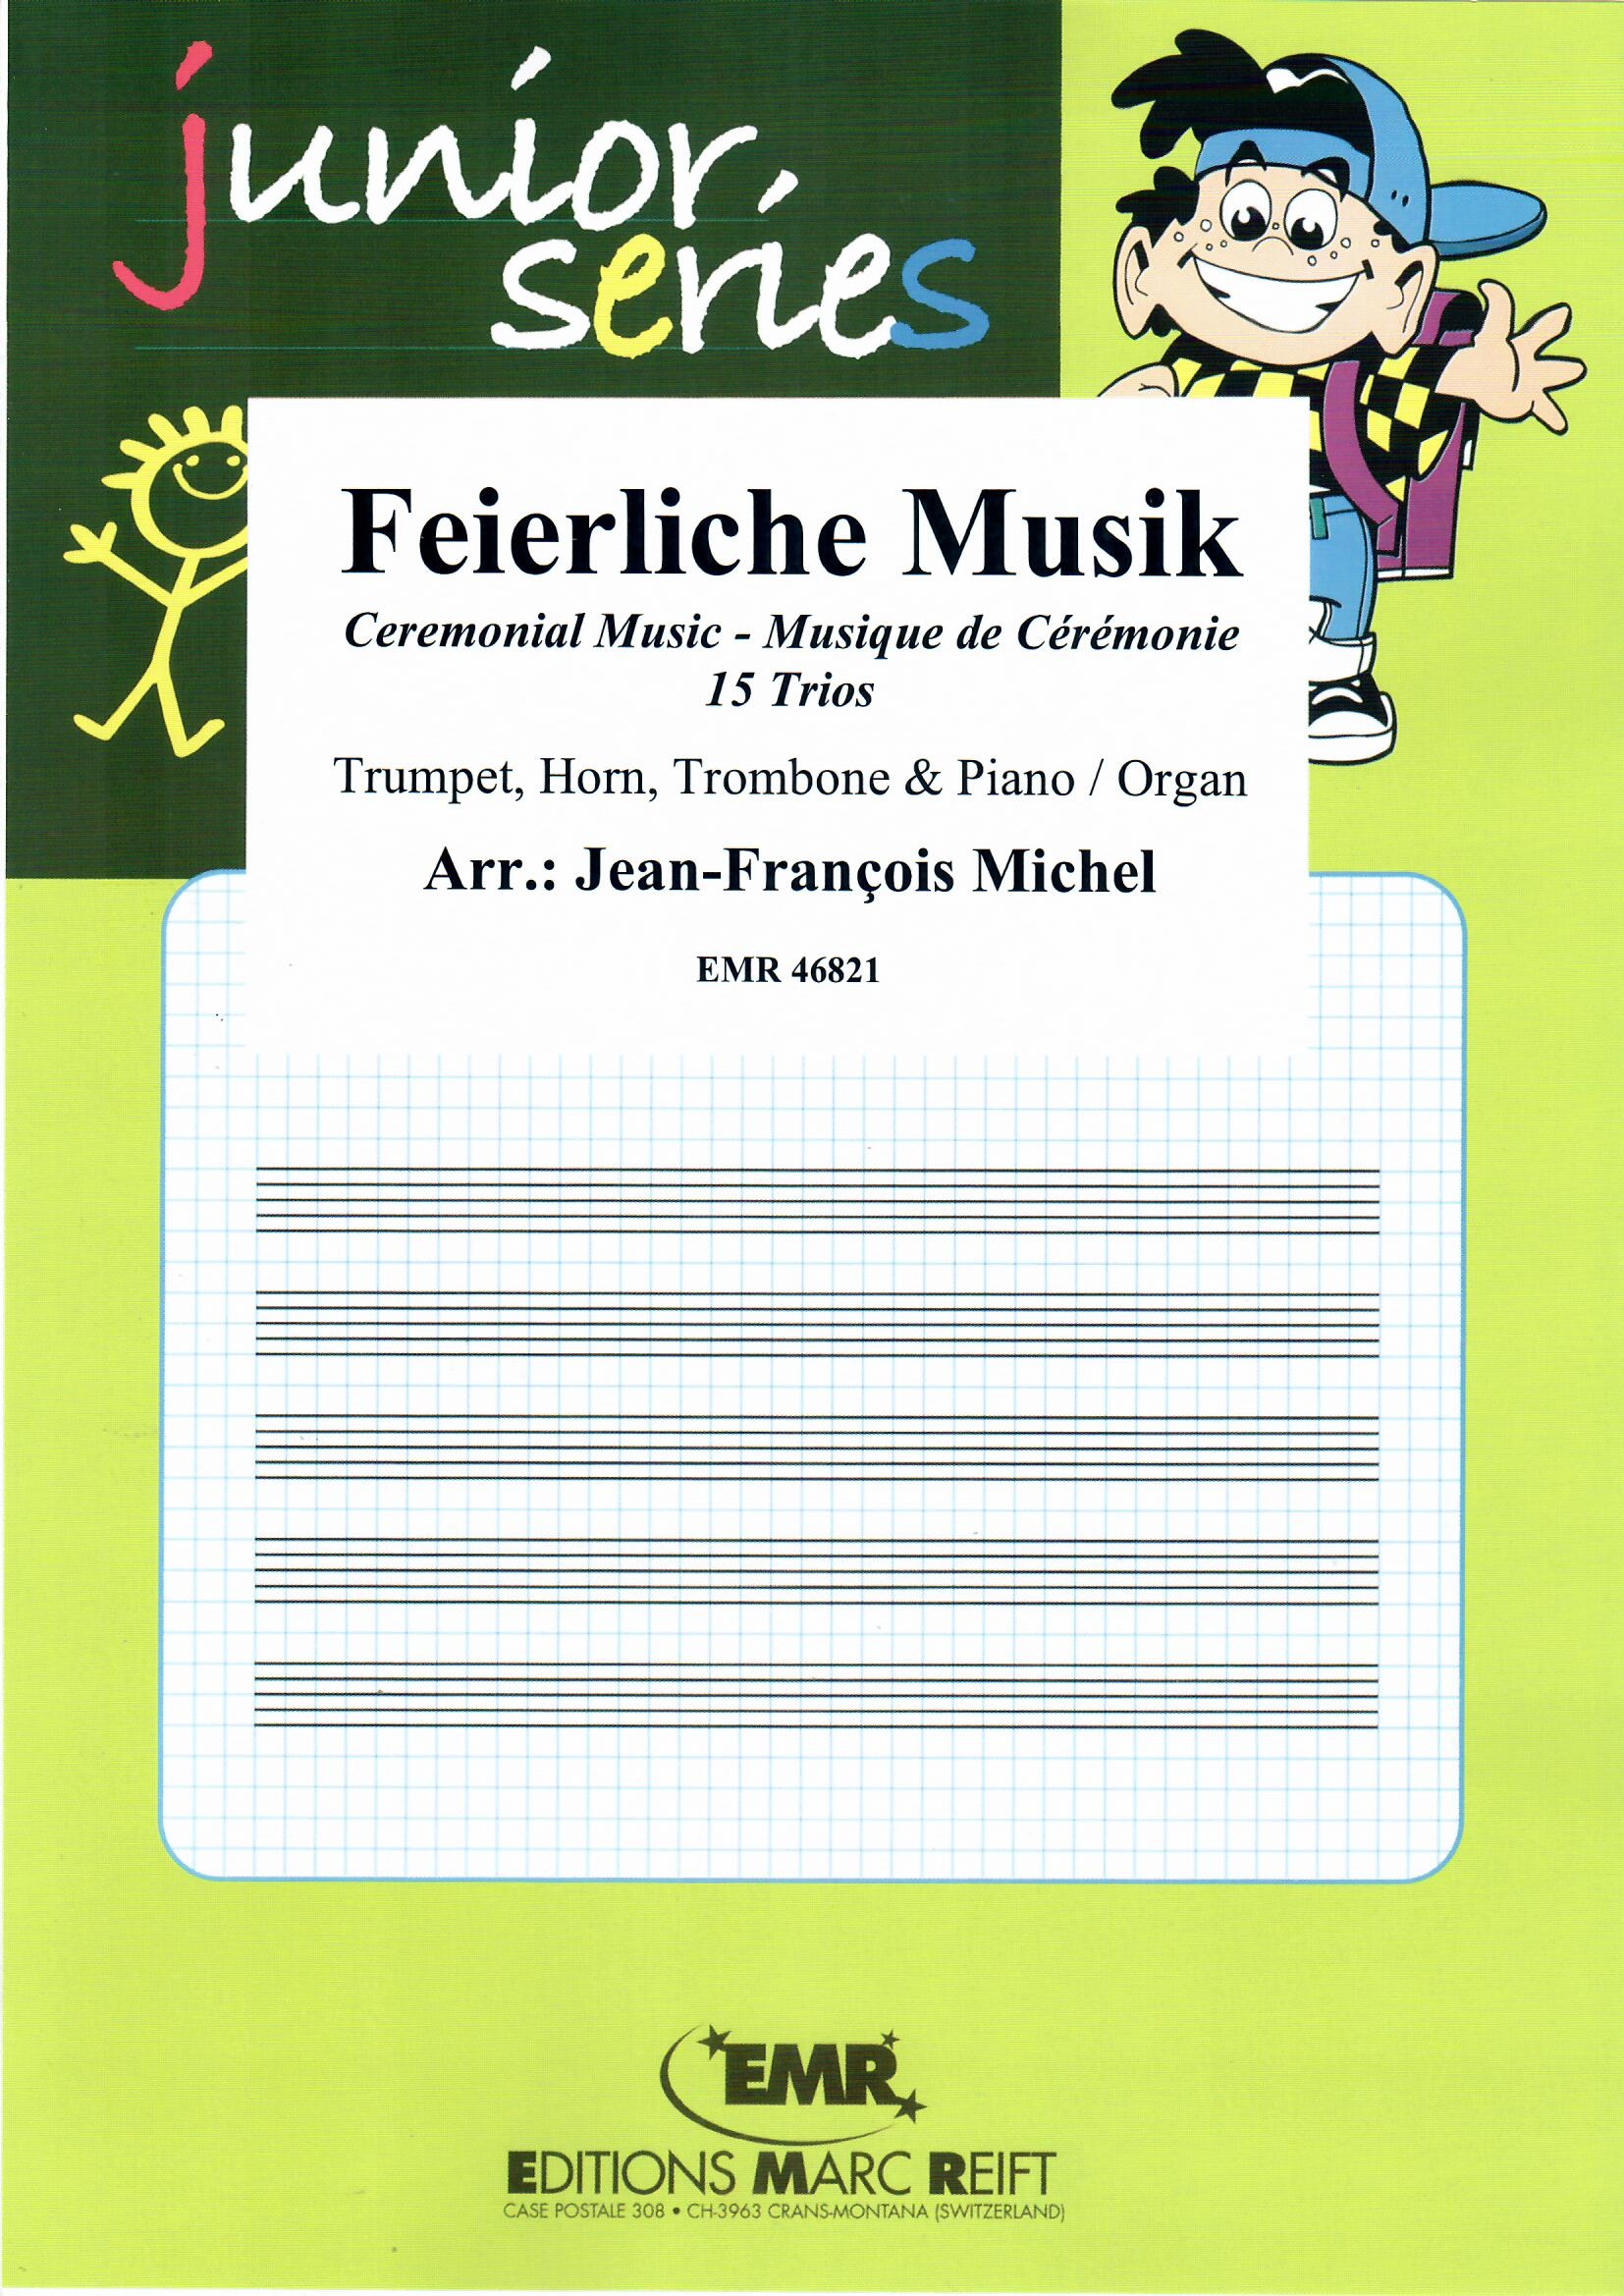 FEIERLICHE MUSIK - Brass trio